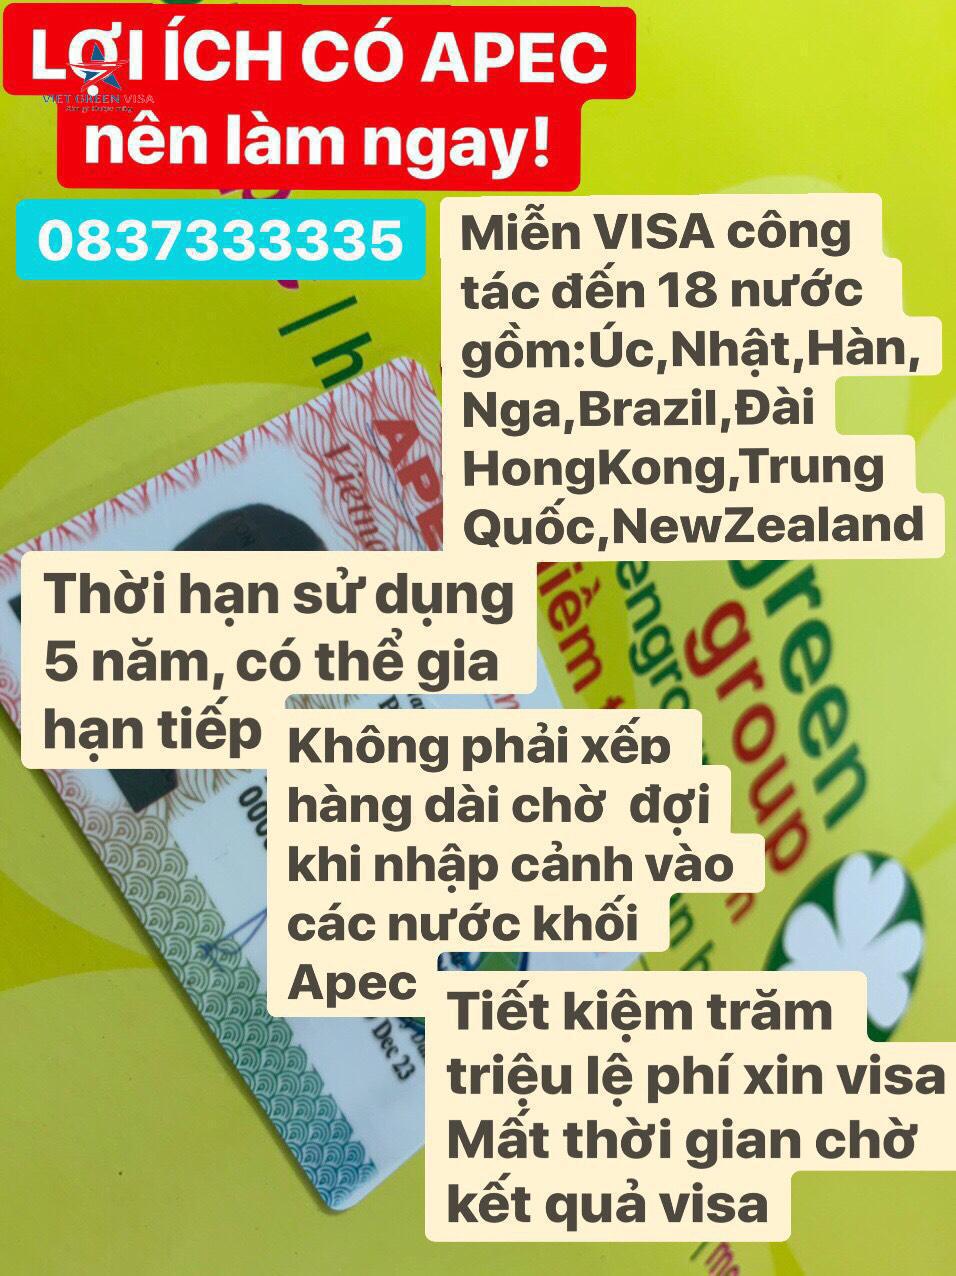 Dịch vụ làm thẻ Apec tại Đắk Lắk chuyên nghiệp